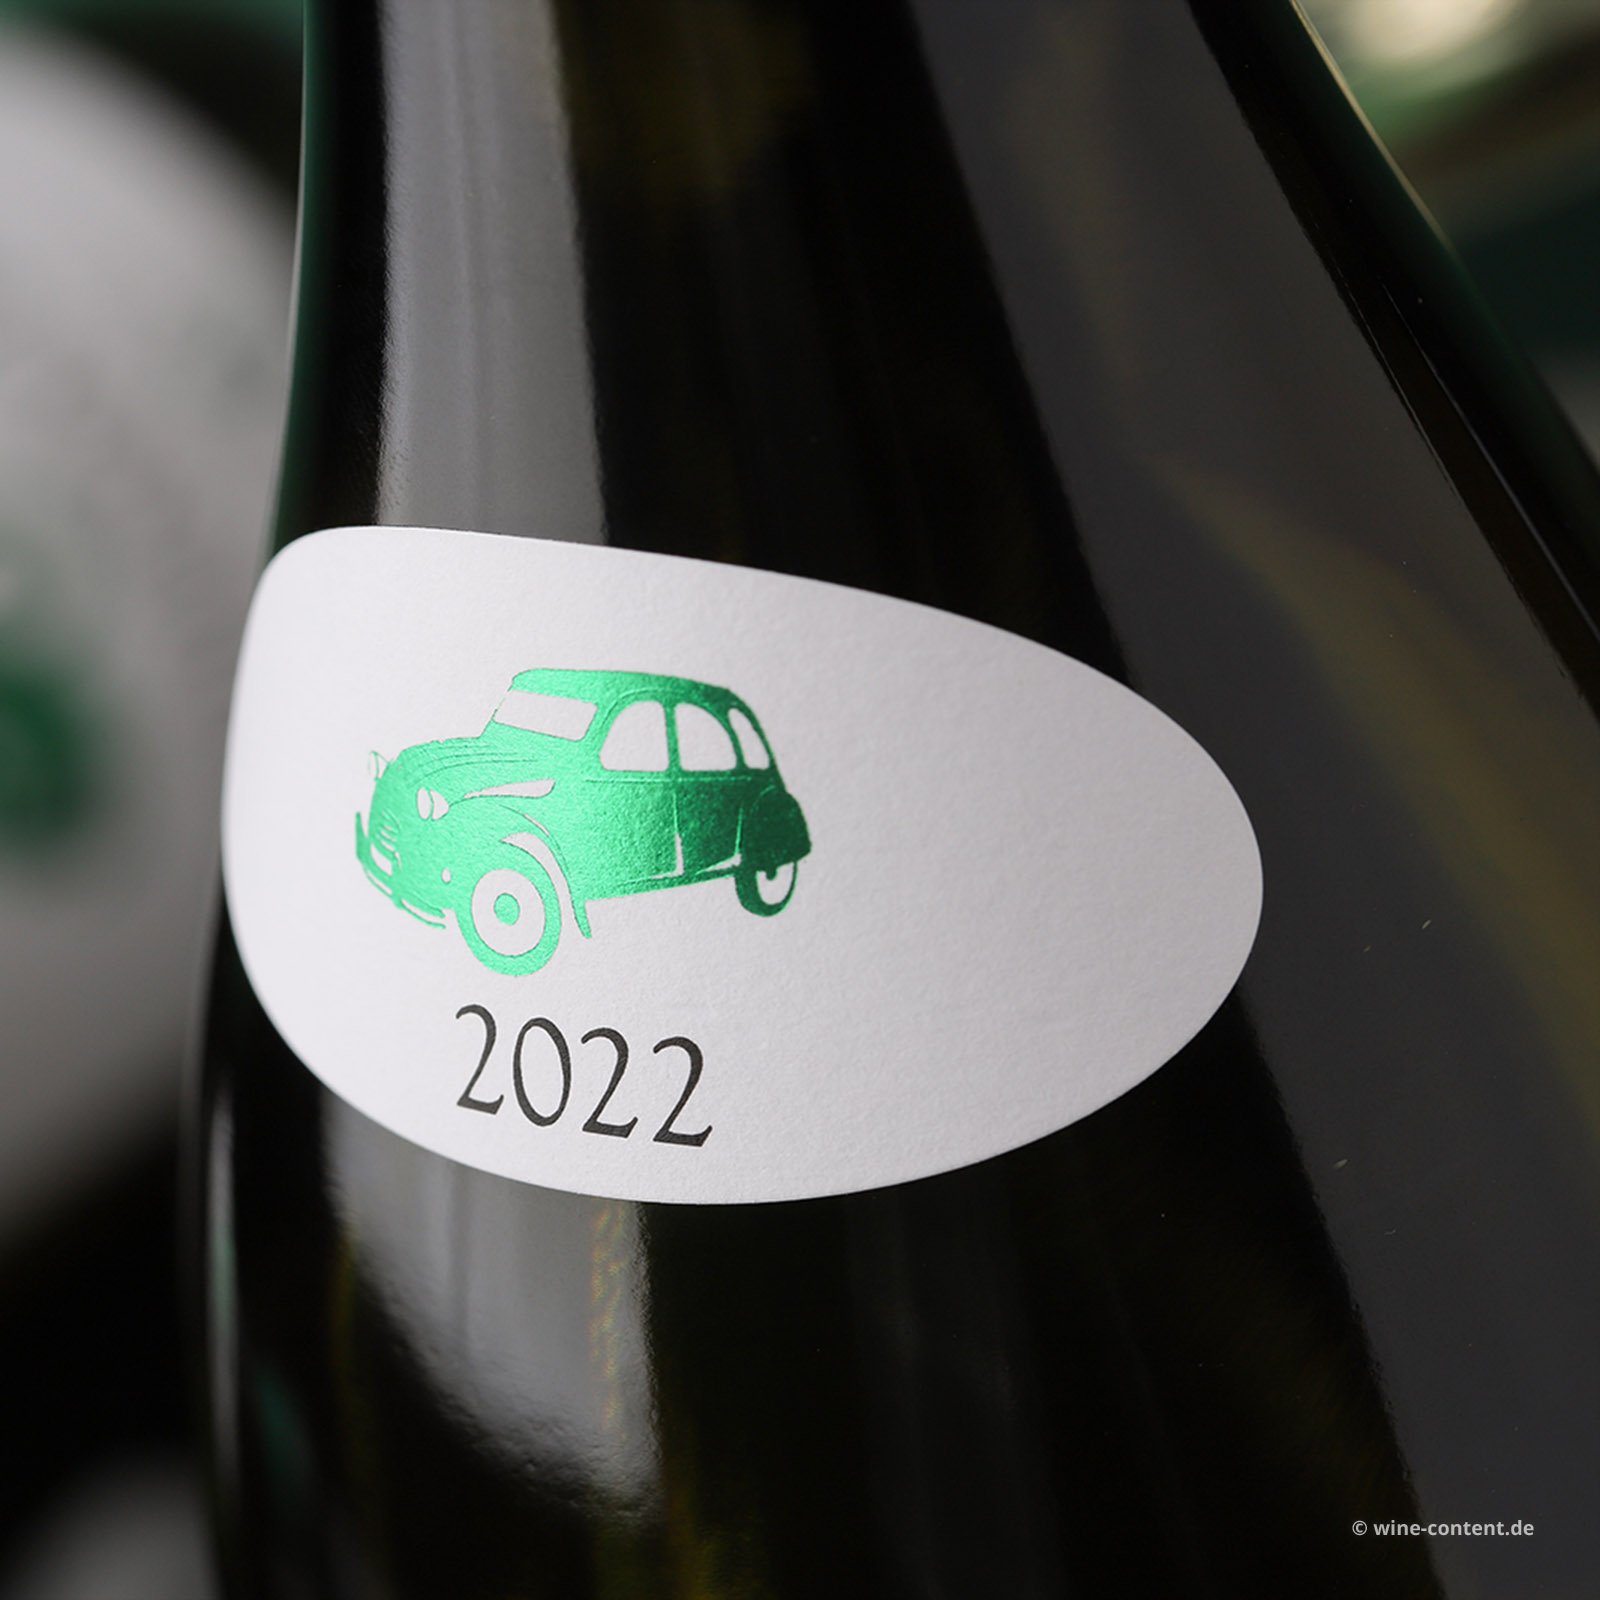 Sauvignon Blanc 2022